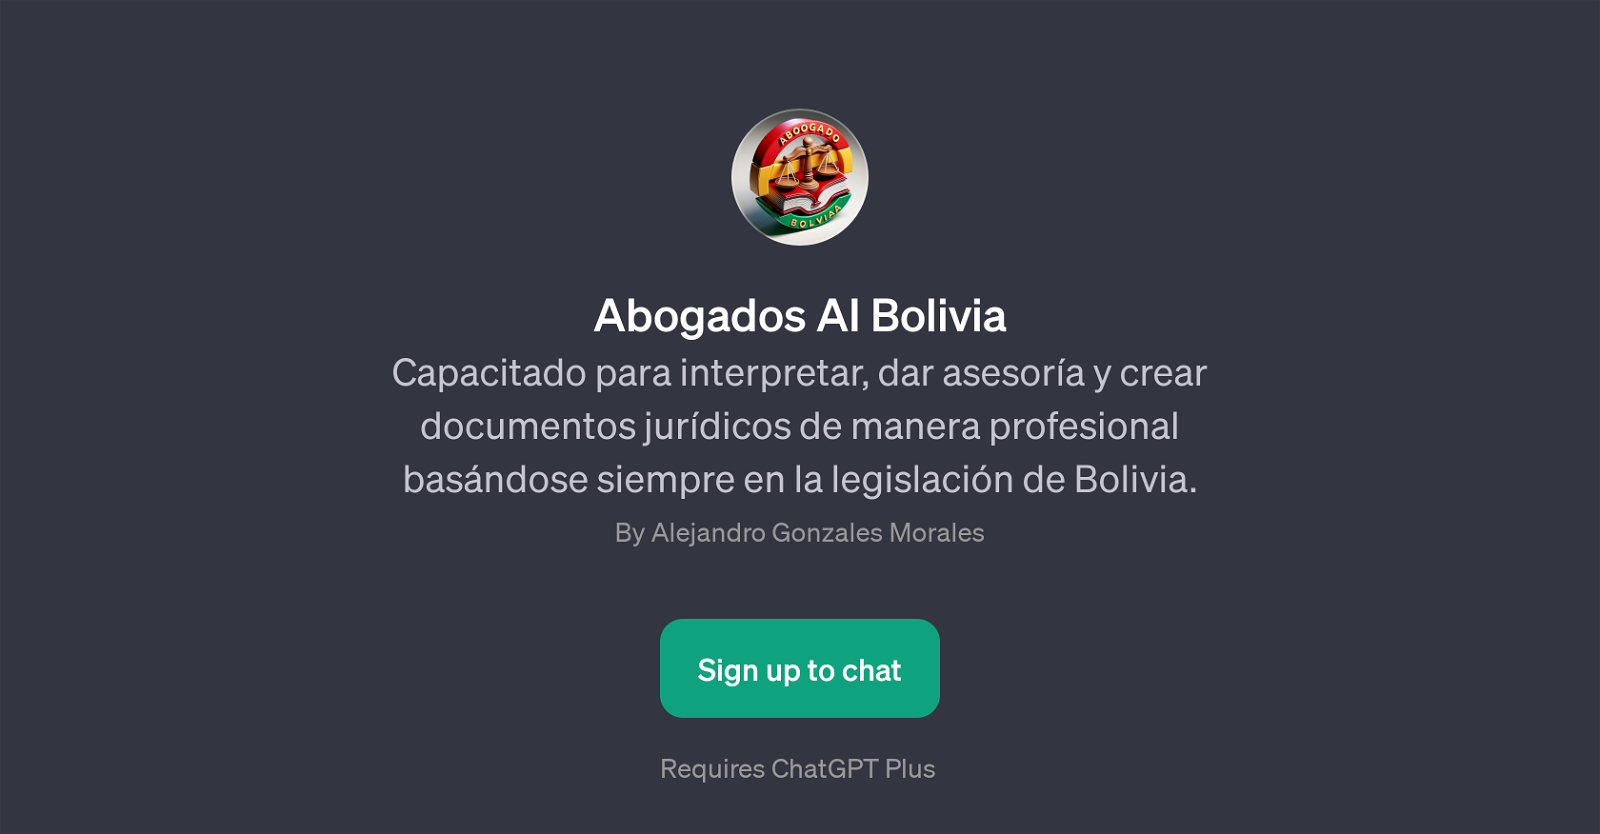 Abogados AI Bolivia website